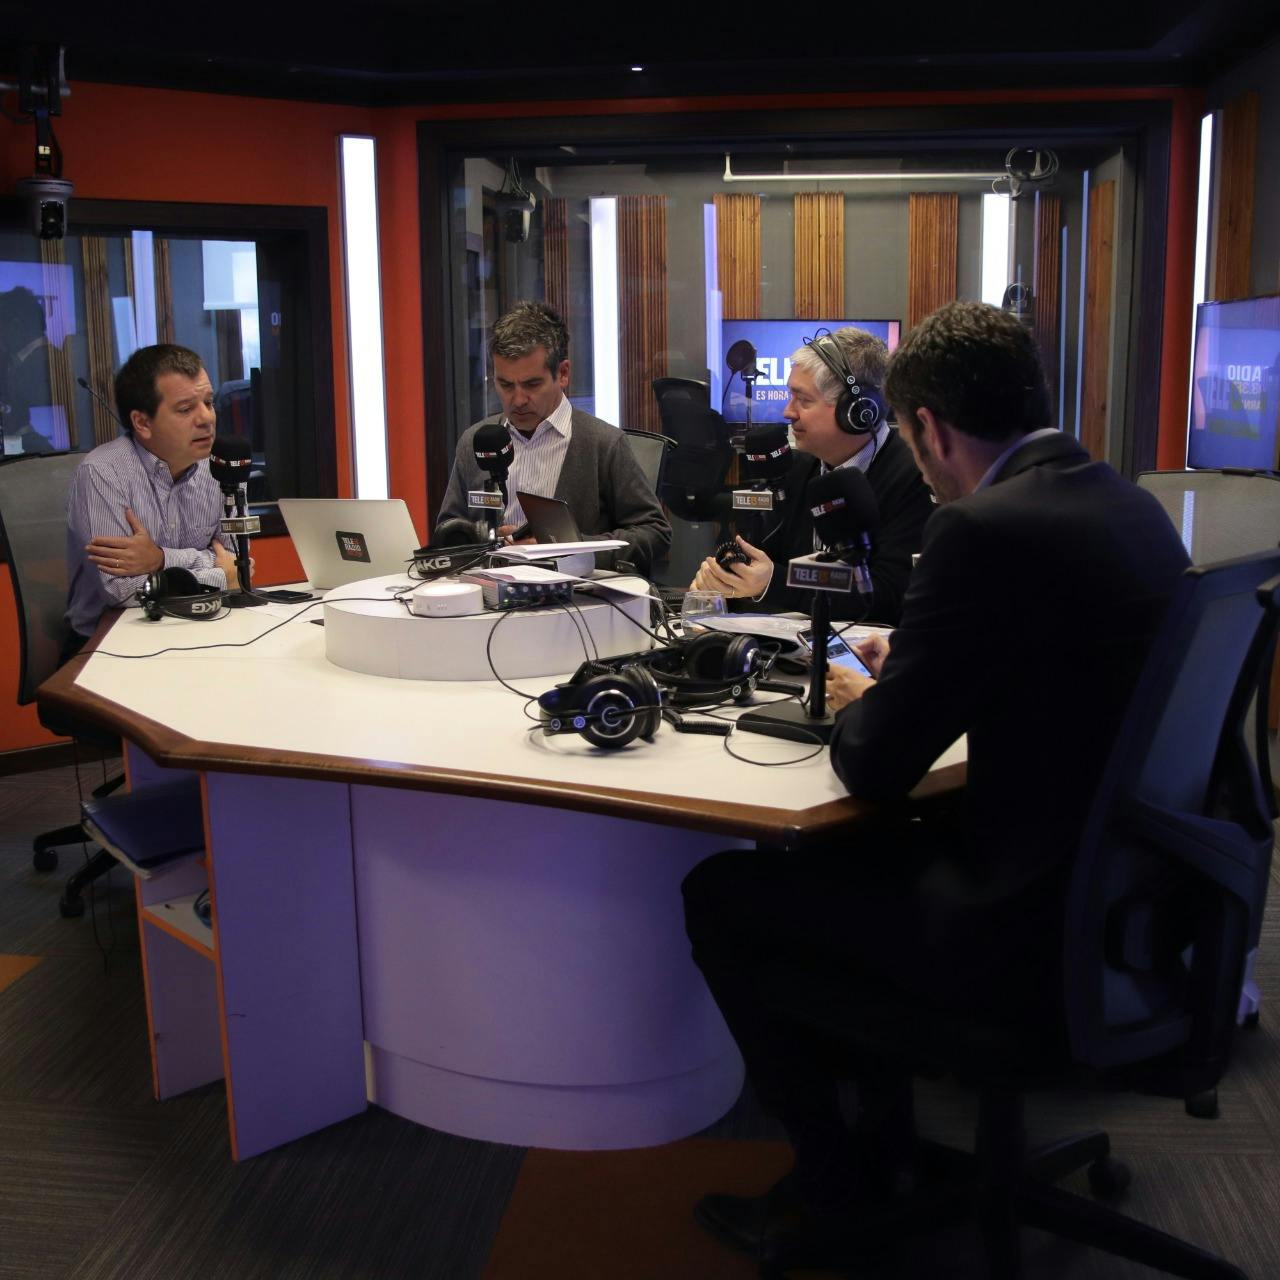 Mujica, Covarrubias y Navarrete analizan denuncias por abuso sexual a Hugo Montes, el informe de la ONU sobre Venezuela  - Podcast - Mesa Central - Columnistas - Emisor Podcasting